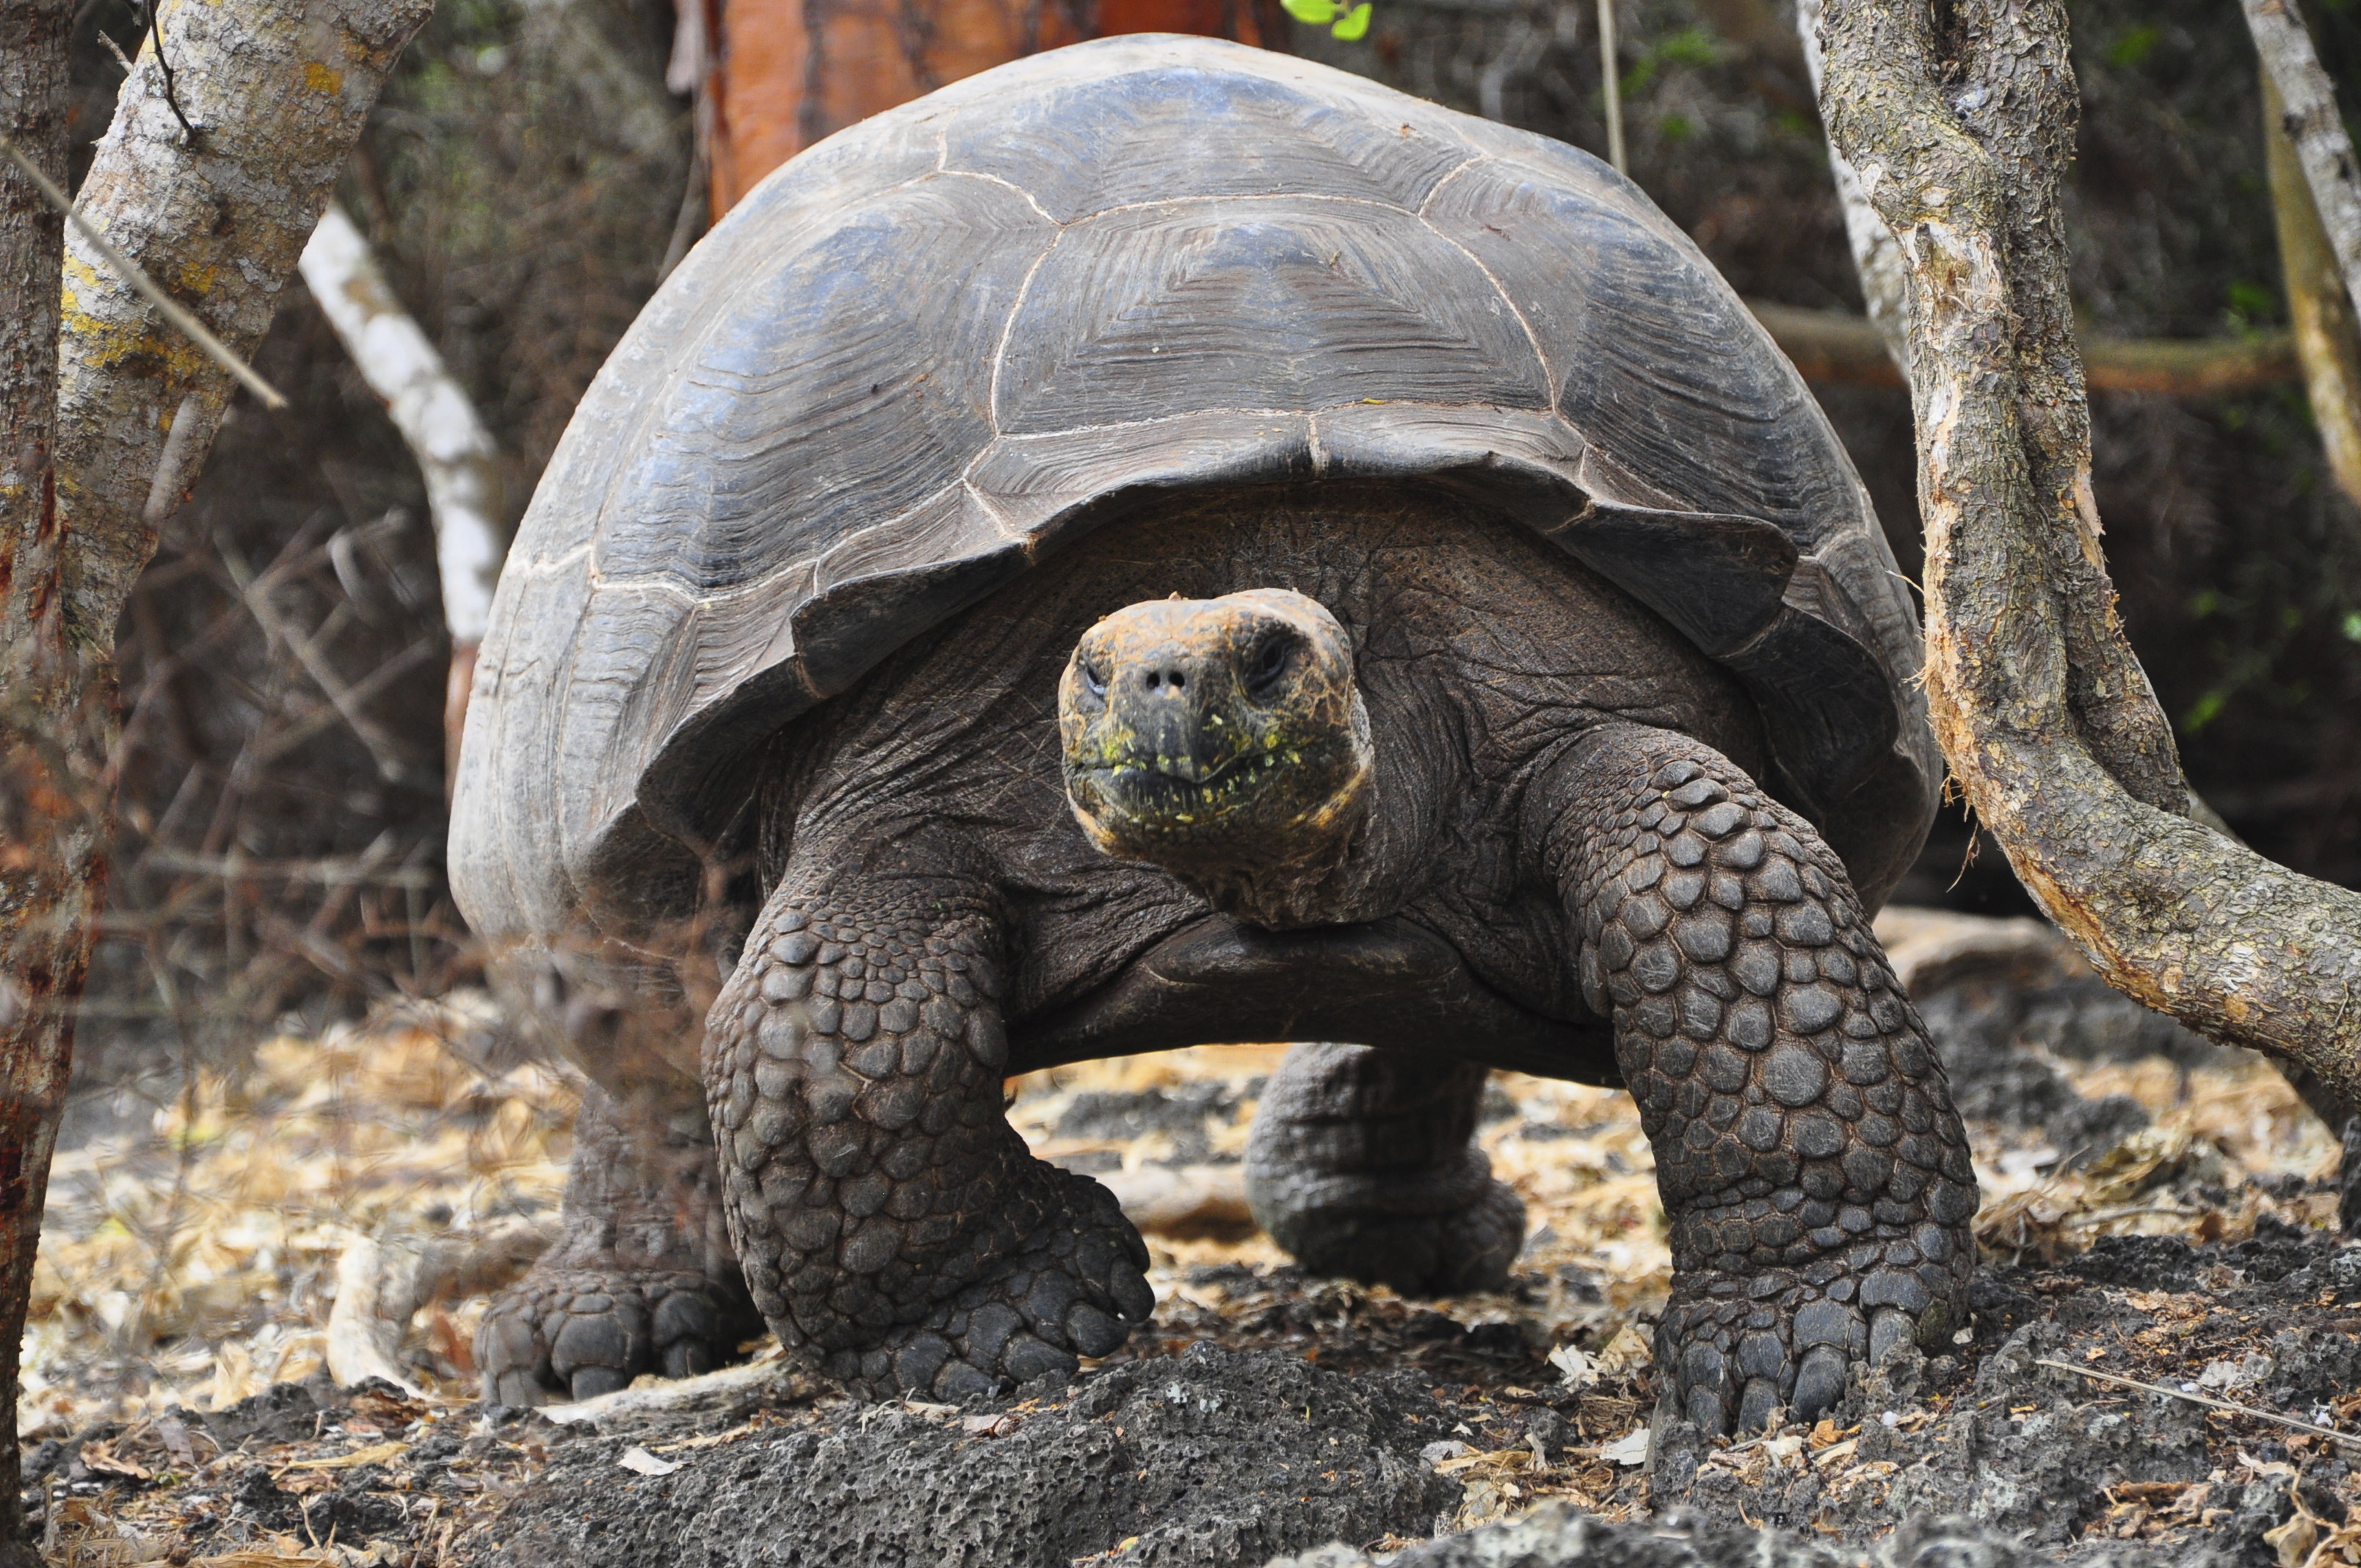 Galapagos Tortoise, Galapagos Islands, Ecuador